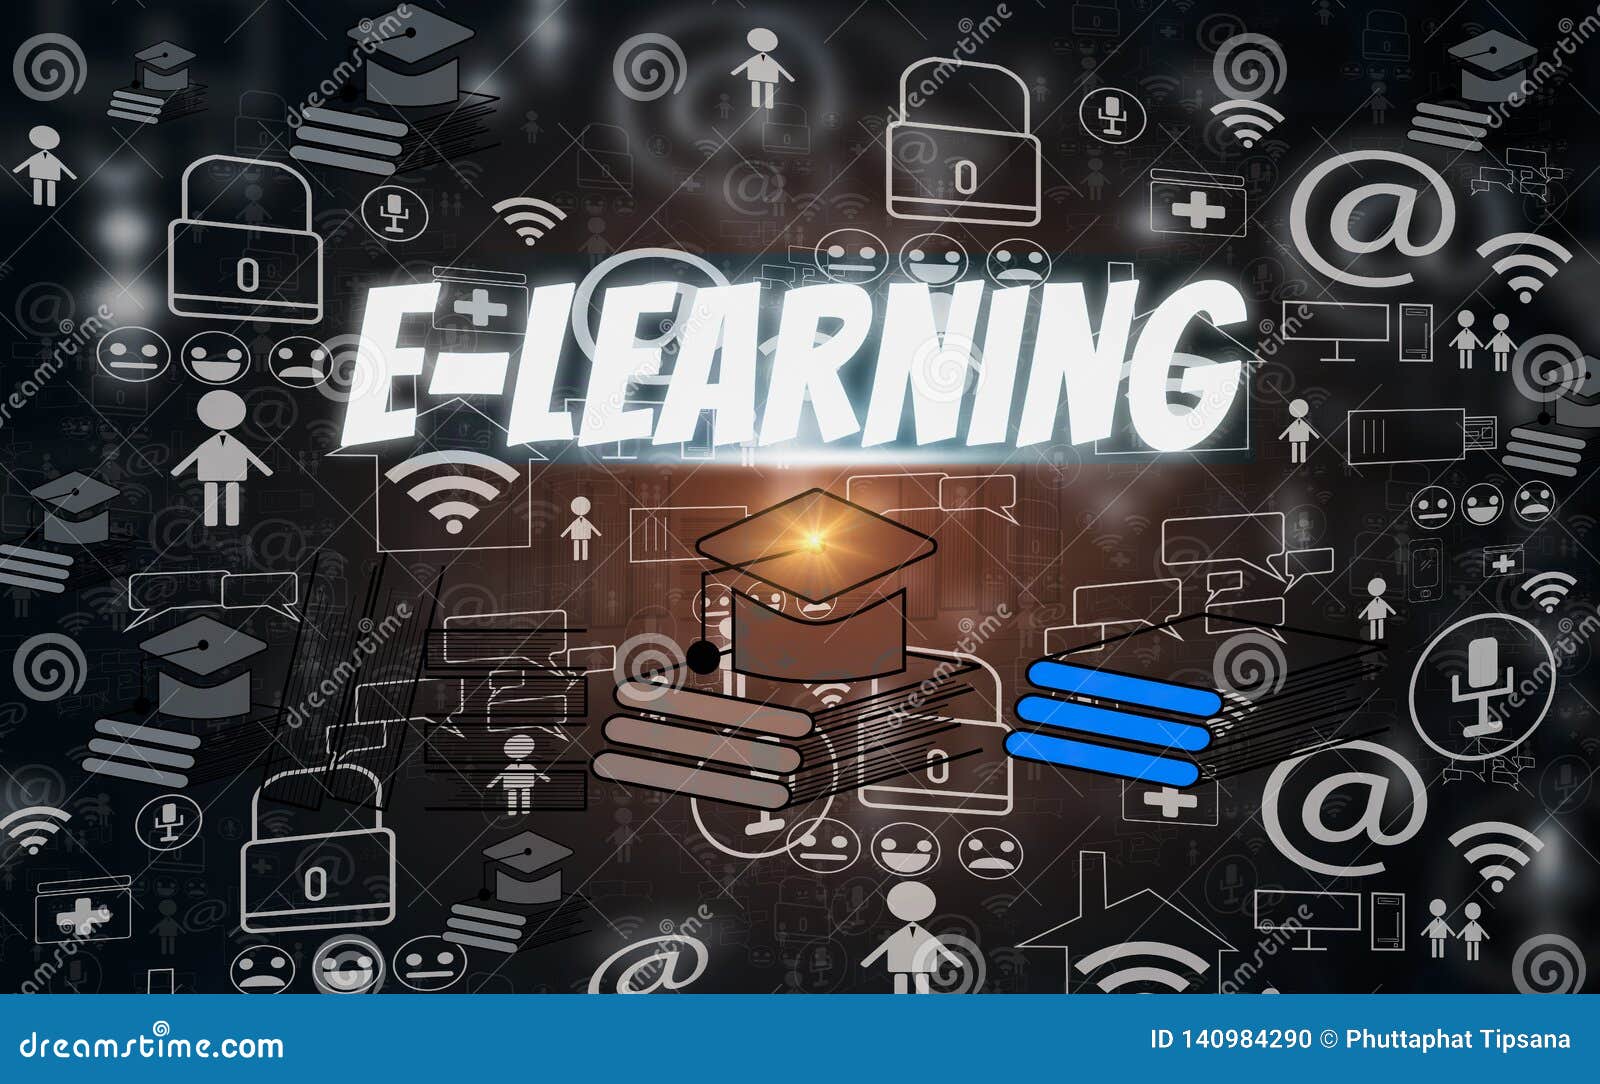 E-learning: Học trực tuyến không chỉ giúp bạn đảm bảo an toàn sức khỏe mà còn tiết kiệm thời gian và tiền bạc. Với các khóa học trực tuyến, bạn có thể học bất kỳ lúc nào và ở bất kỳ đâu, chỉ cần có thiết bị điện tử và kết nối internet. Hãy xem hình ảnh liên quan đến e-learning để khám phá thêm về sự tiện lợi và hiệu quả của hình thức học này. 